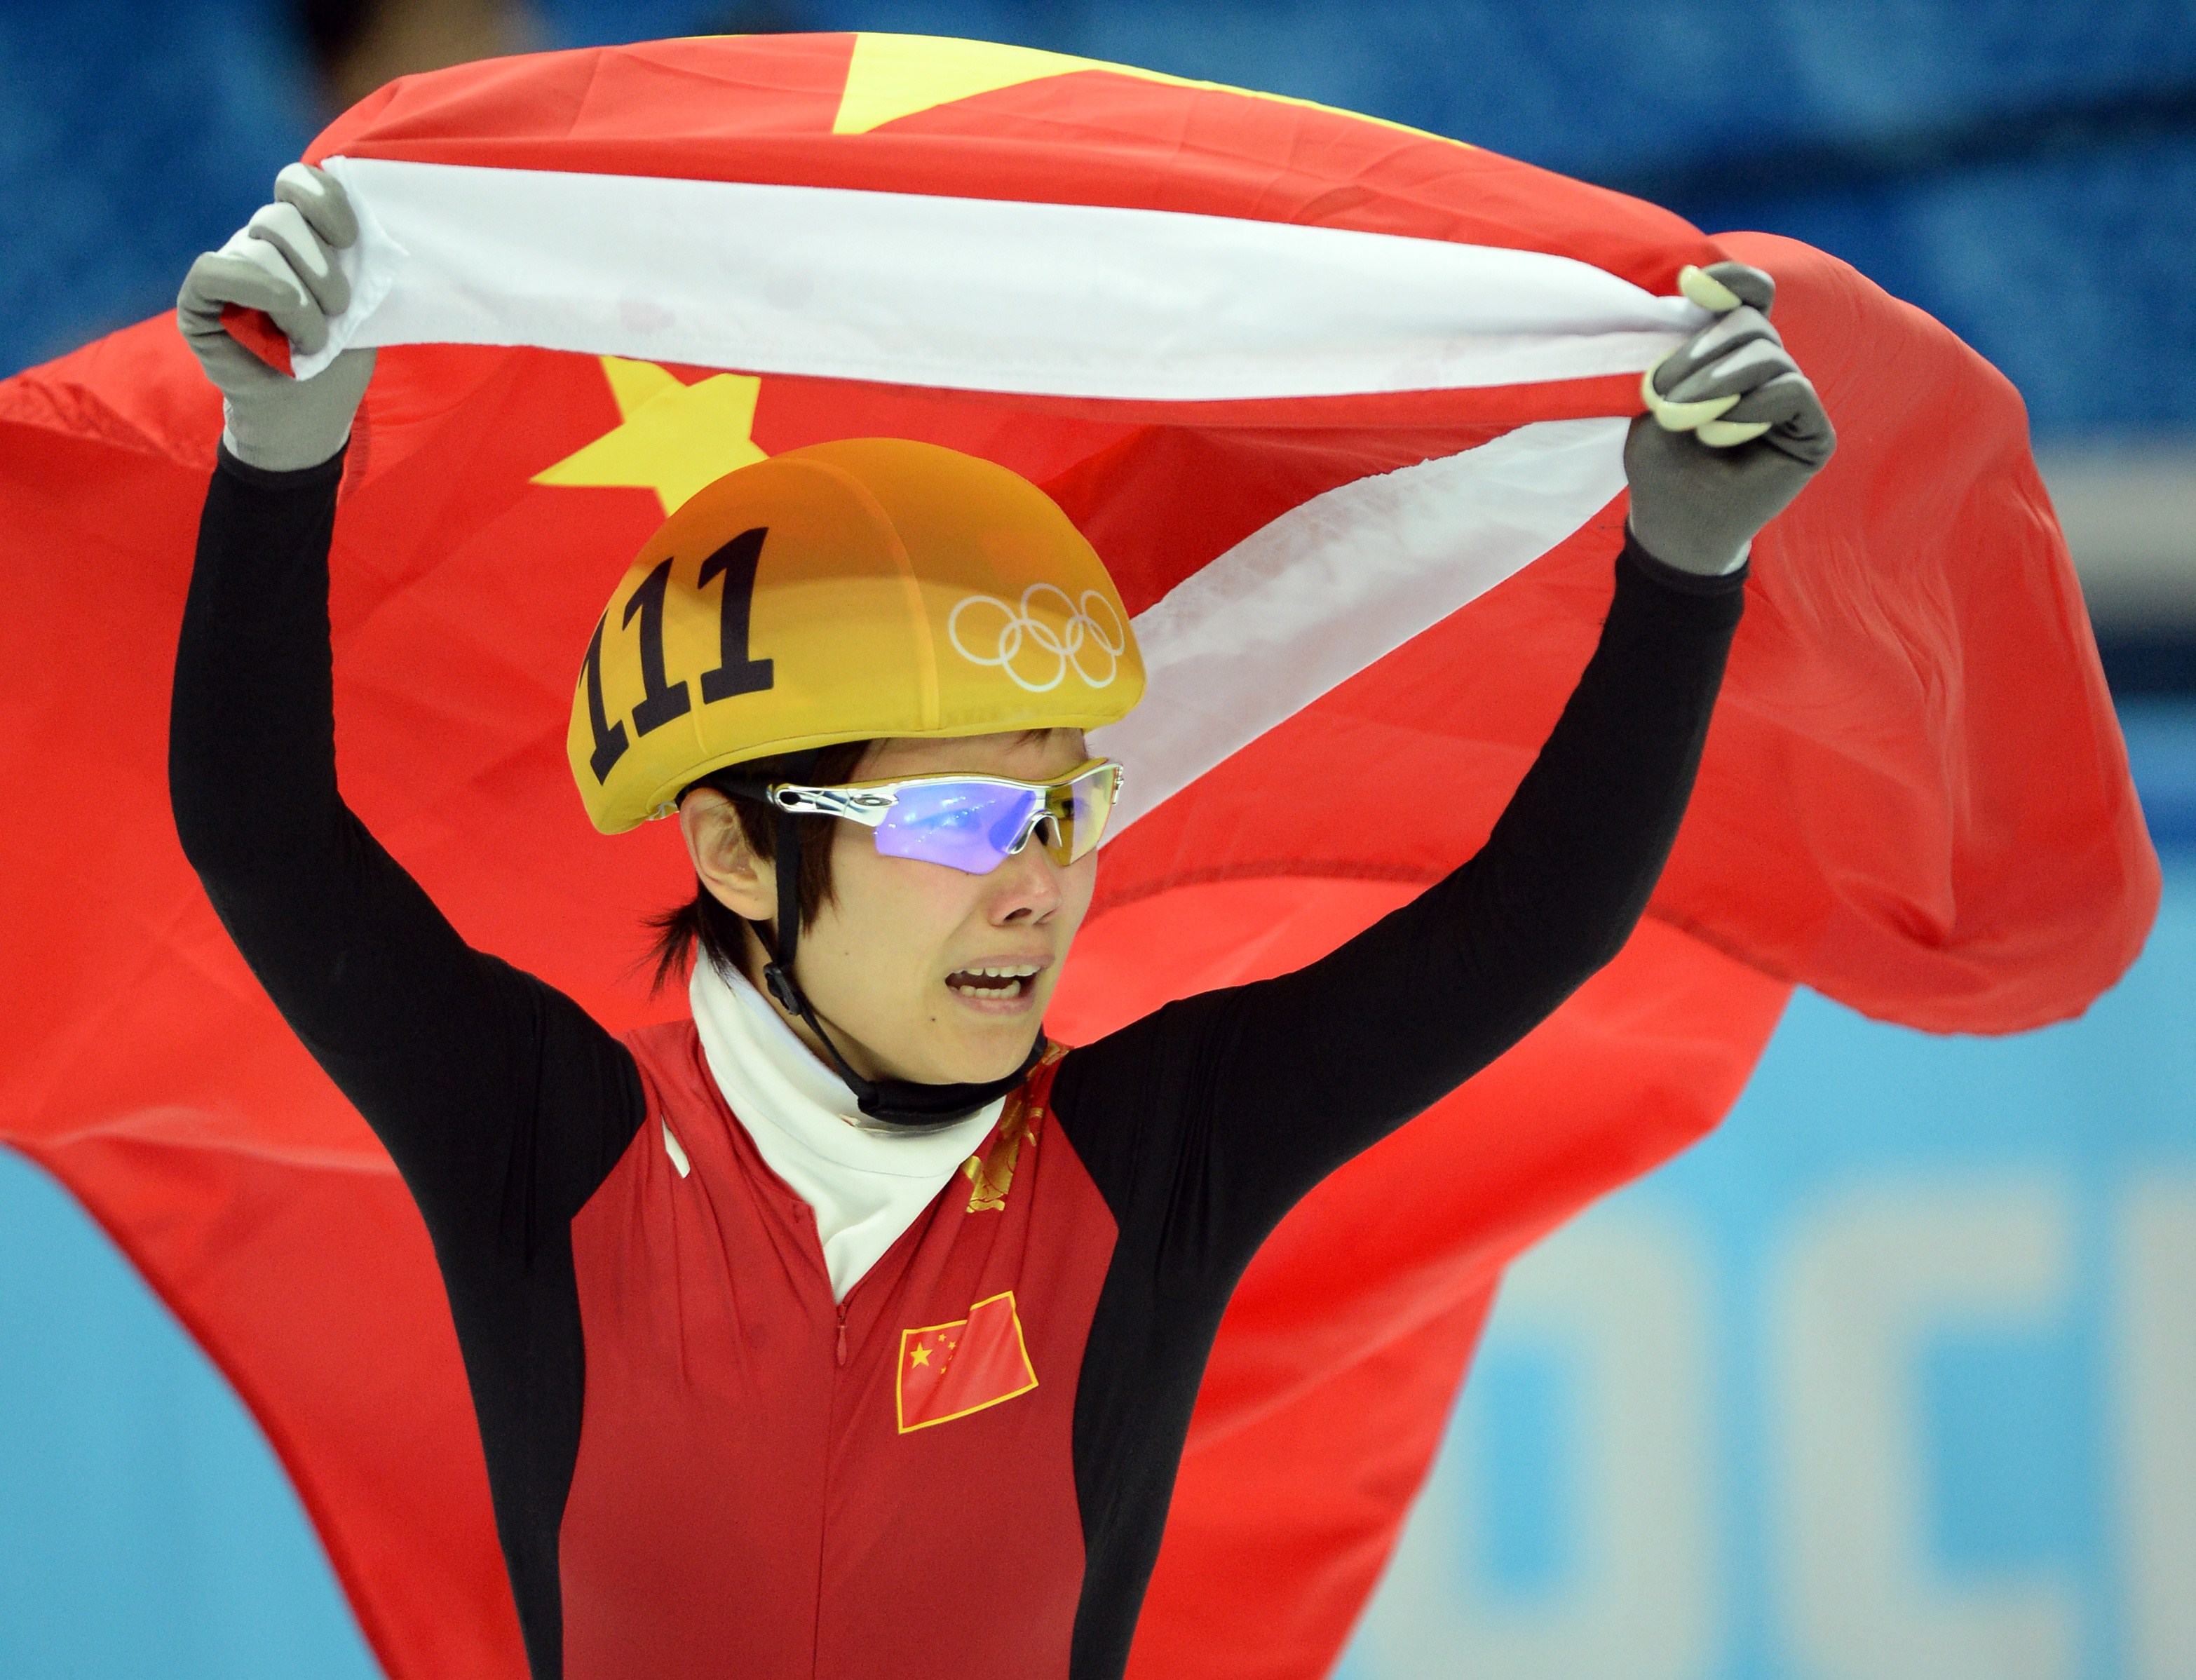 Jocurile Olimpice de la Soci. O chinezoaica a luat aurul la patinaj viteza dupa ce toate adversarele ei au cazut